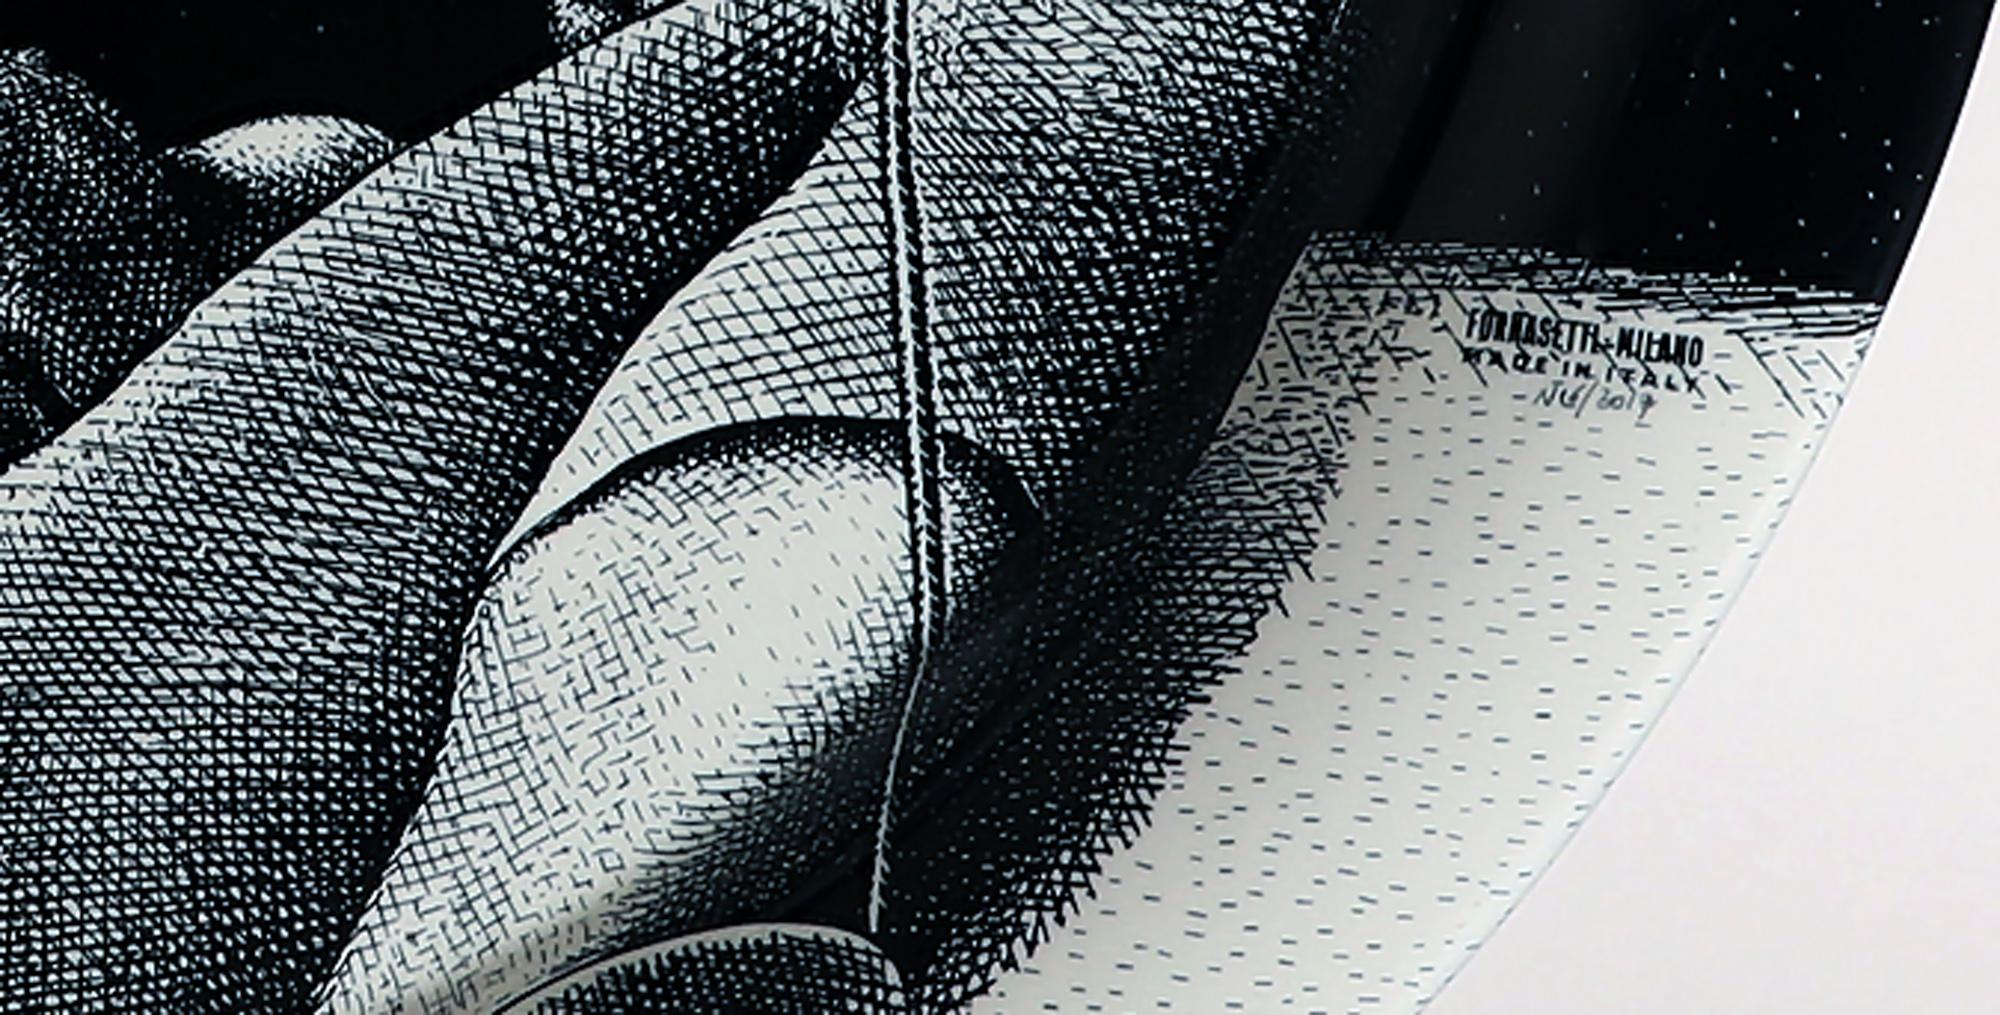 Fornasetti-Tablett
Jongleur mit drehenden Tellern,
Atelier Fornasetti,
Datiert 2017, N 16

Das schwarze runde Tablett ist mit einem Muster aus Themen und Variationen mit der Nummer 193 bedruckt. Es zeigt einen Jongleur auf dem Rücken mit sechs